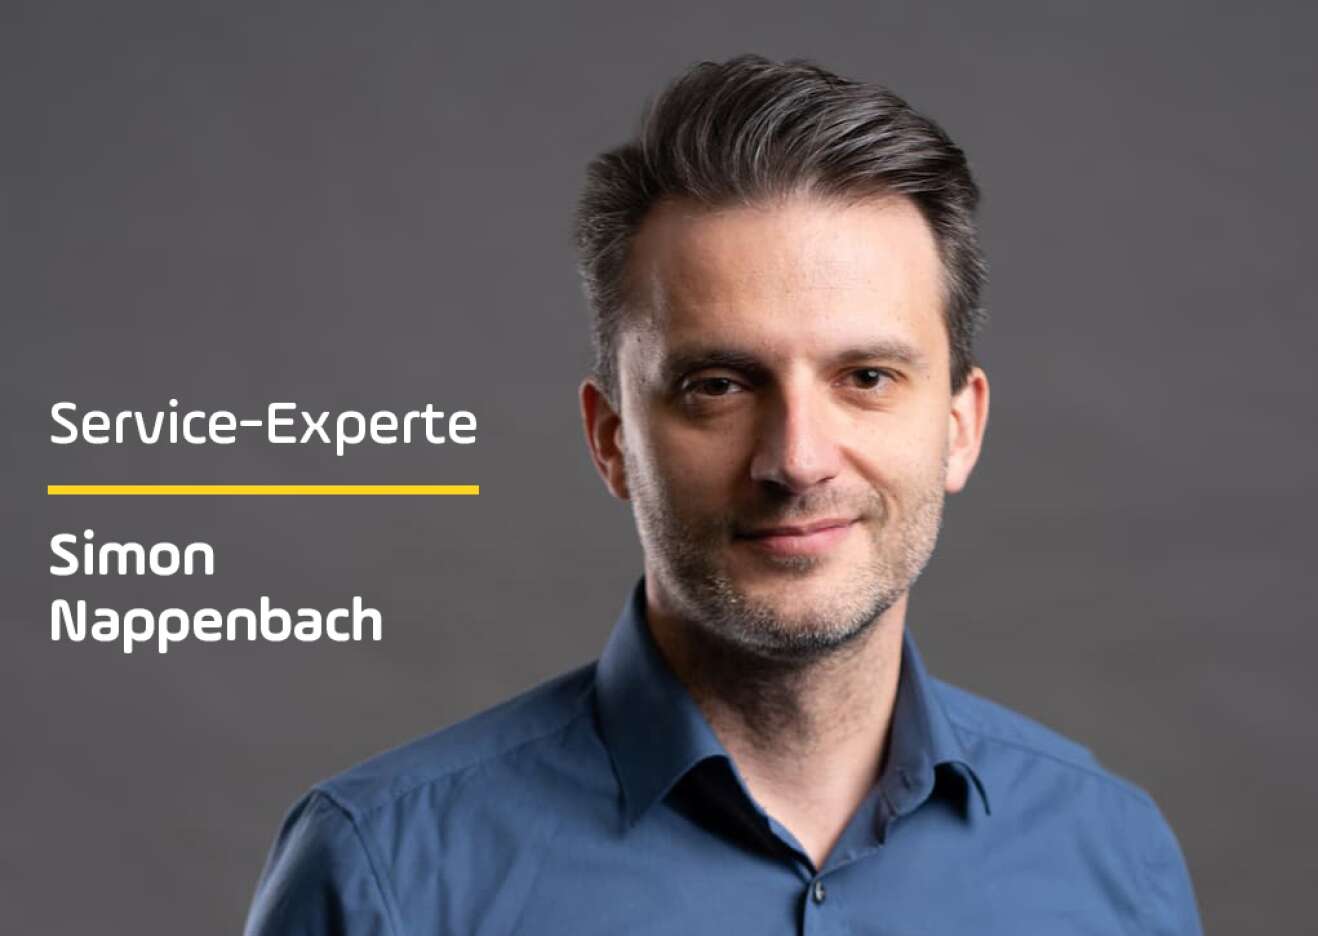 Service Experte Simon Nappenbach